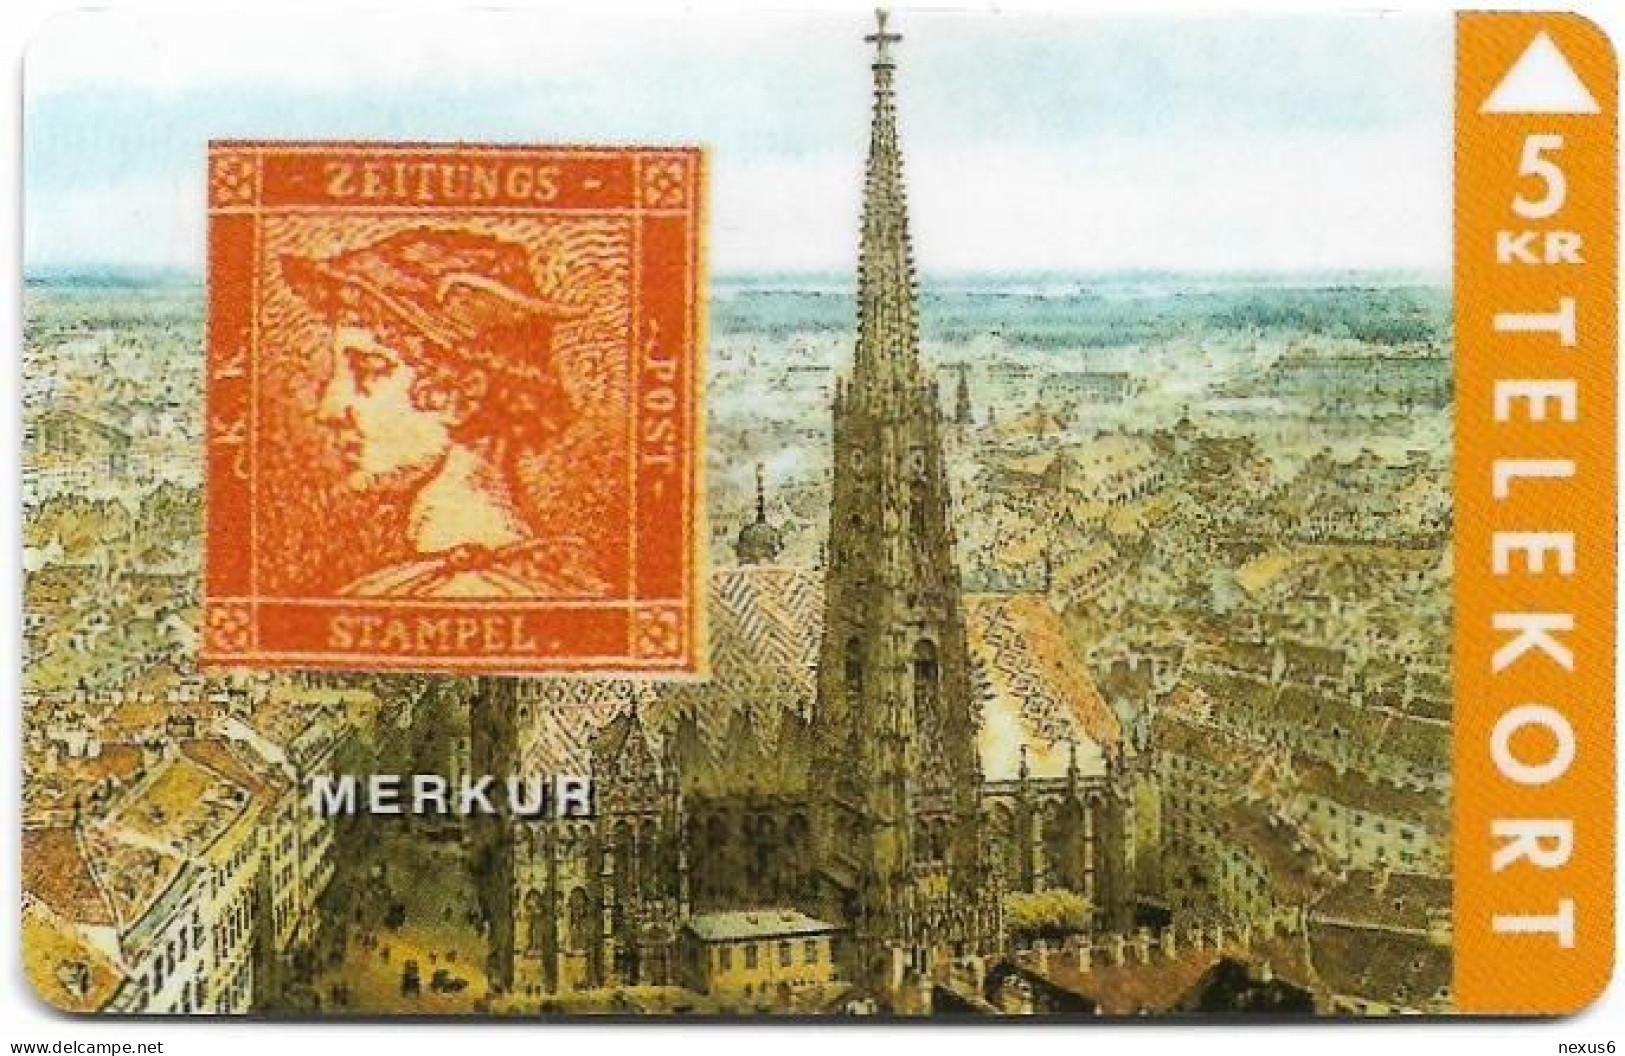 Denmark - TS - Rare Stamps - Merkur - TDTP044 - 04.1994, 5Kr, 2.000ex, Used - Denmark